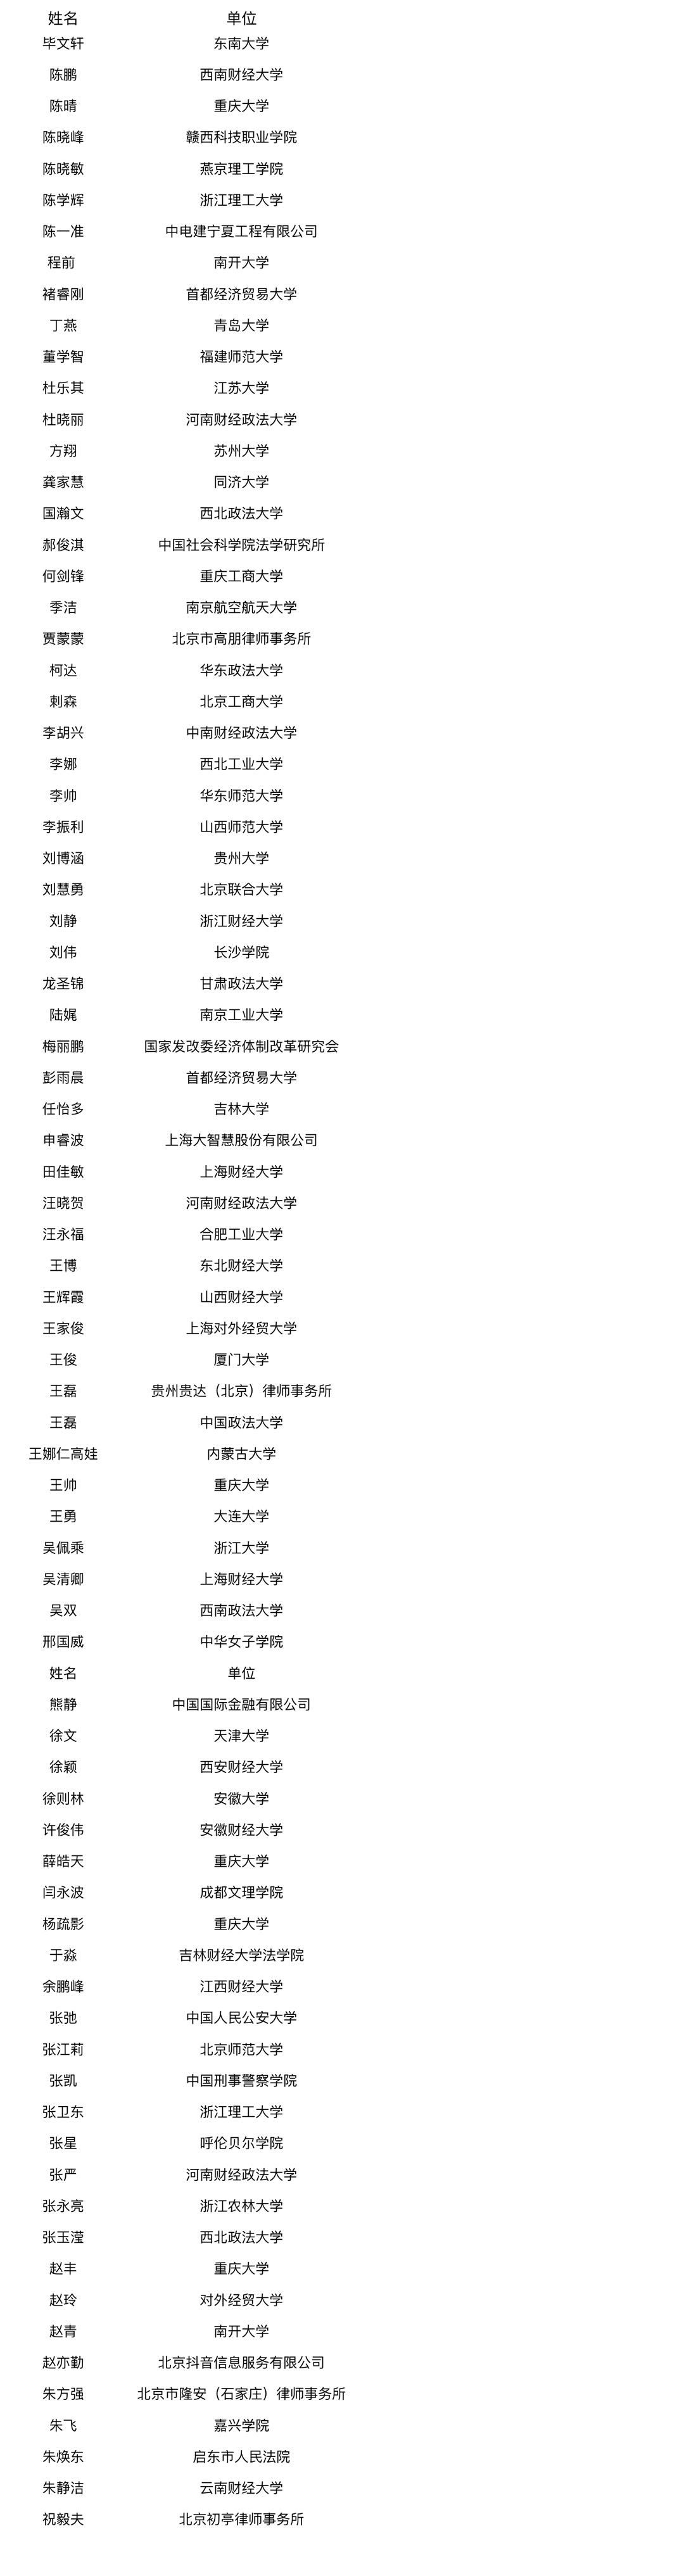 中国法学会经济法学研究会2023年吸收会员名单.JPG